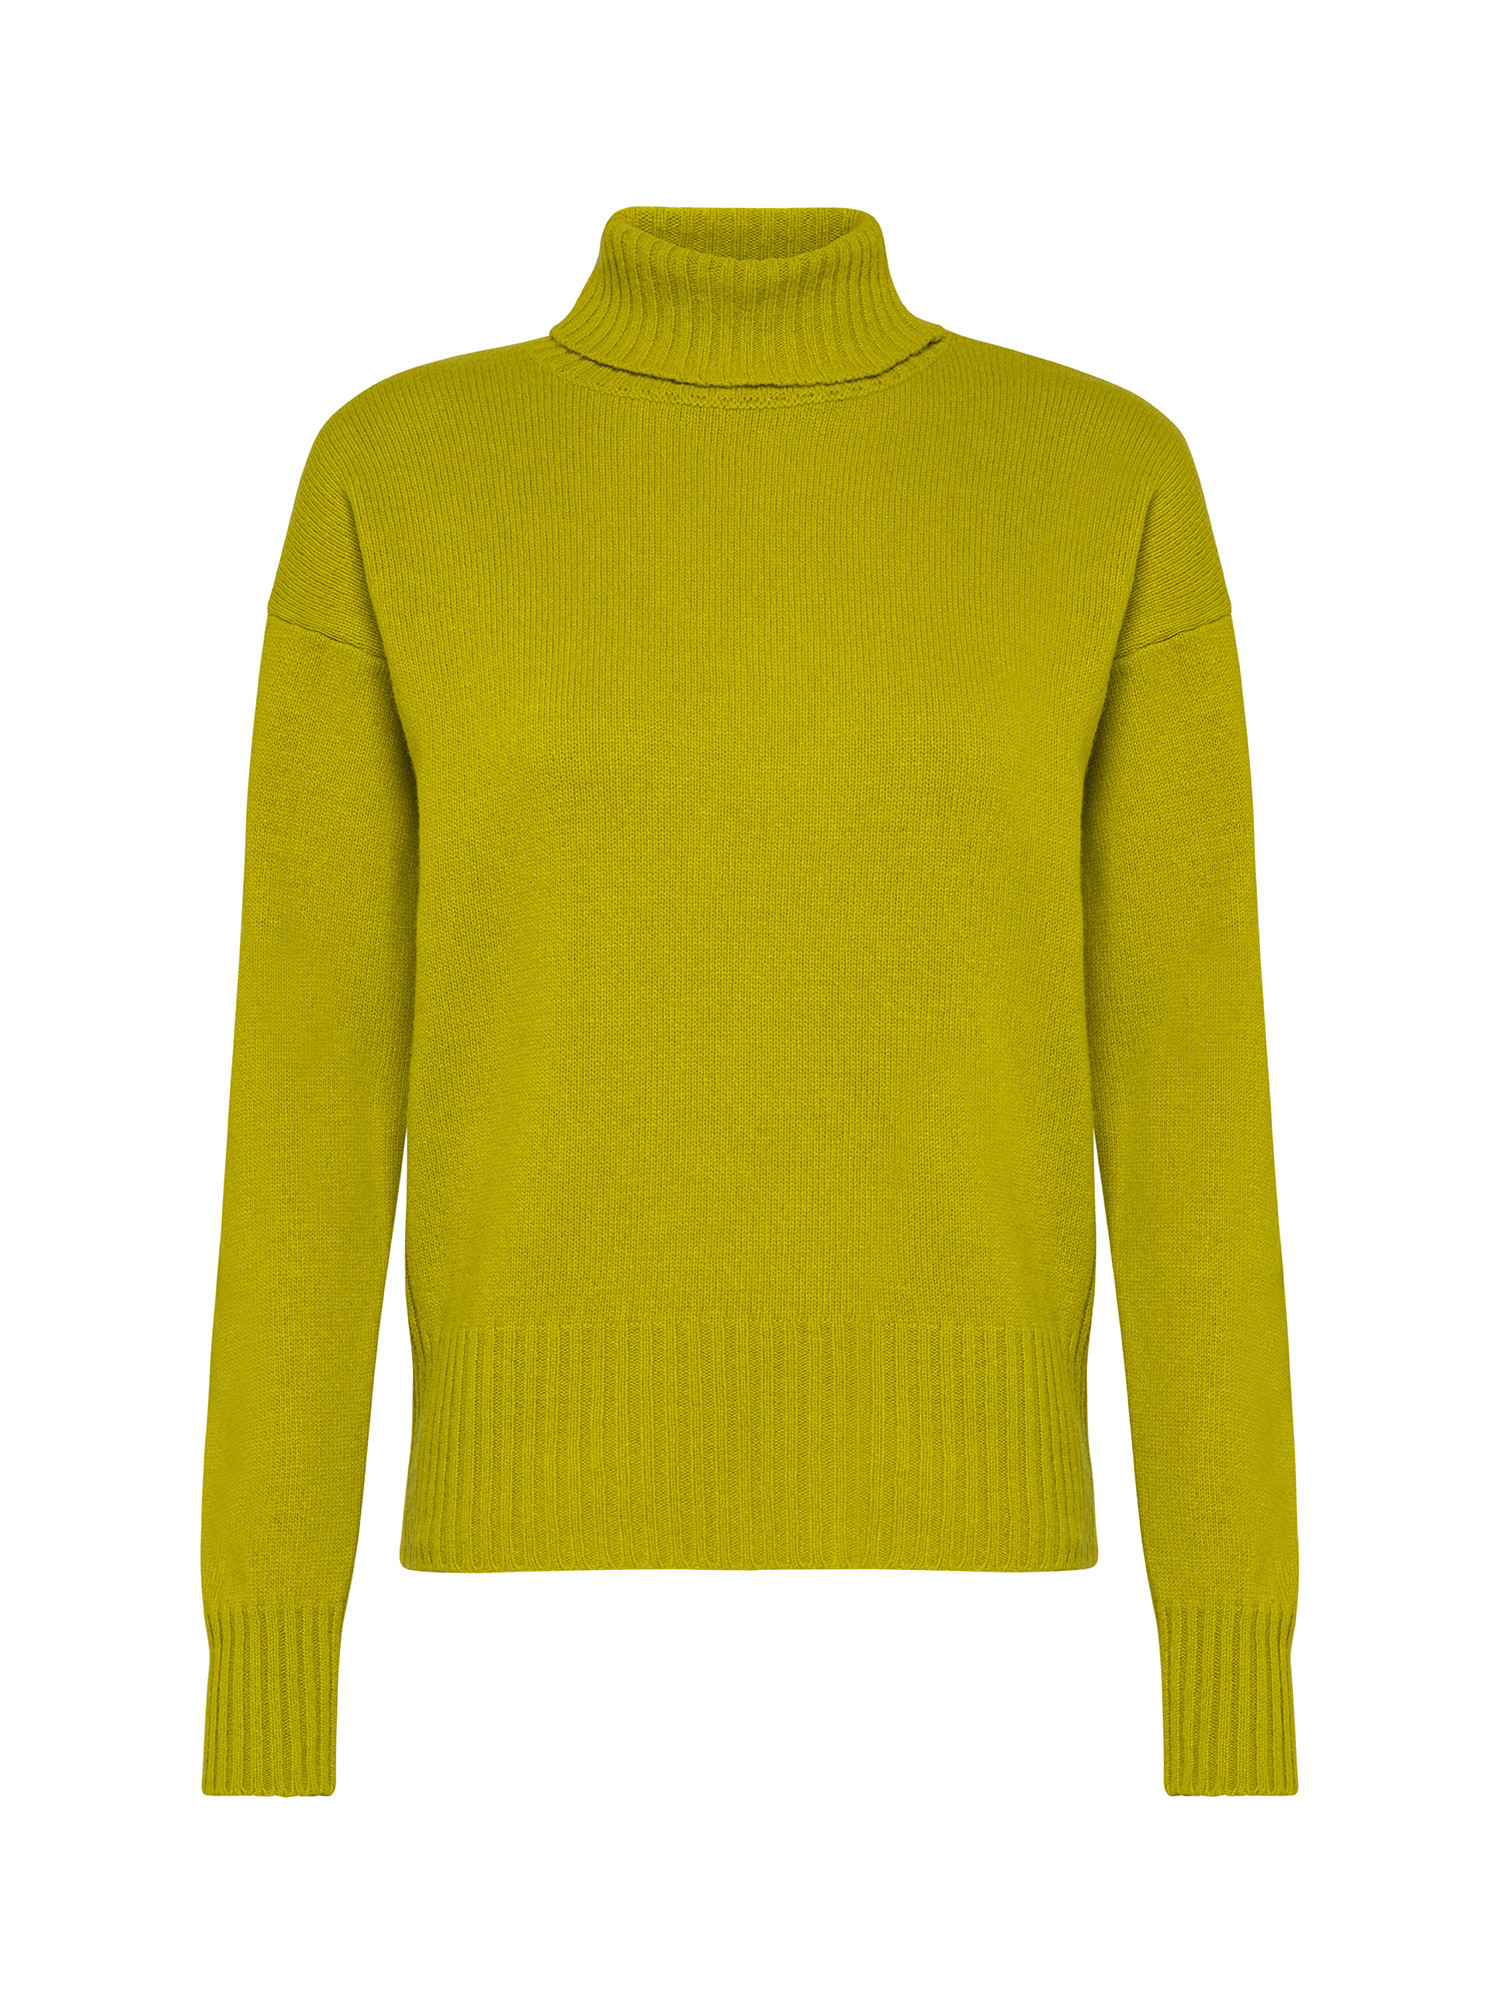 K Collection - Turtleneck sweater, Acid Green, large image number 0